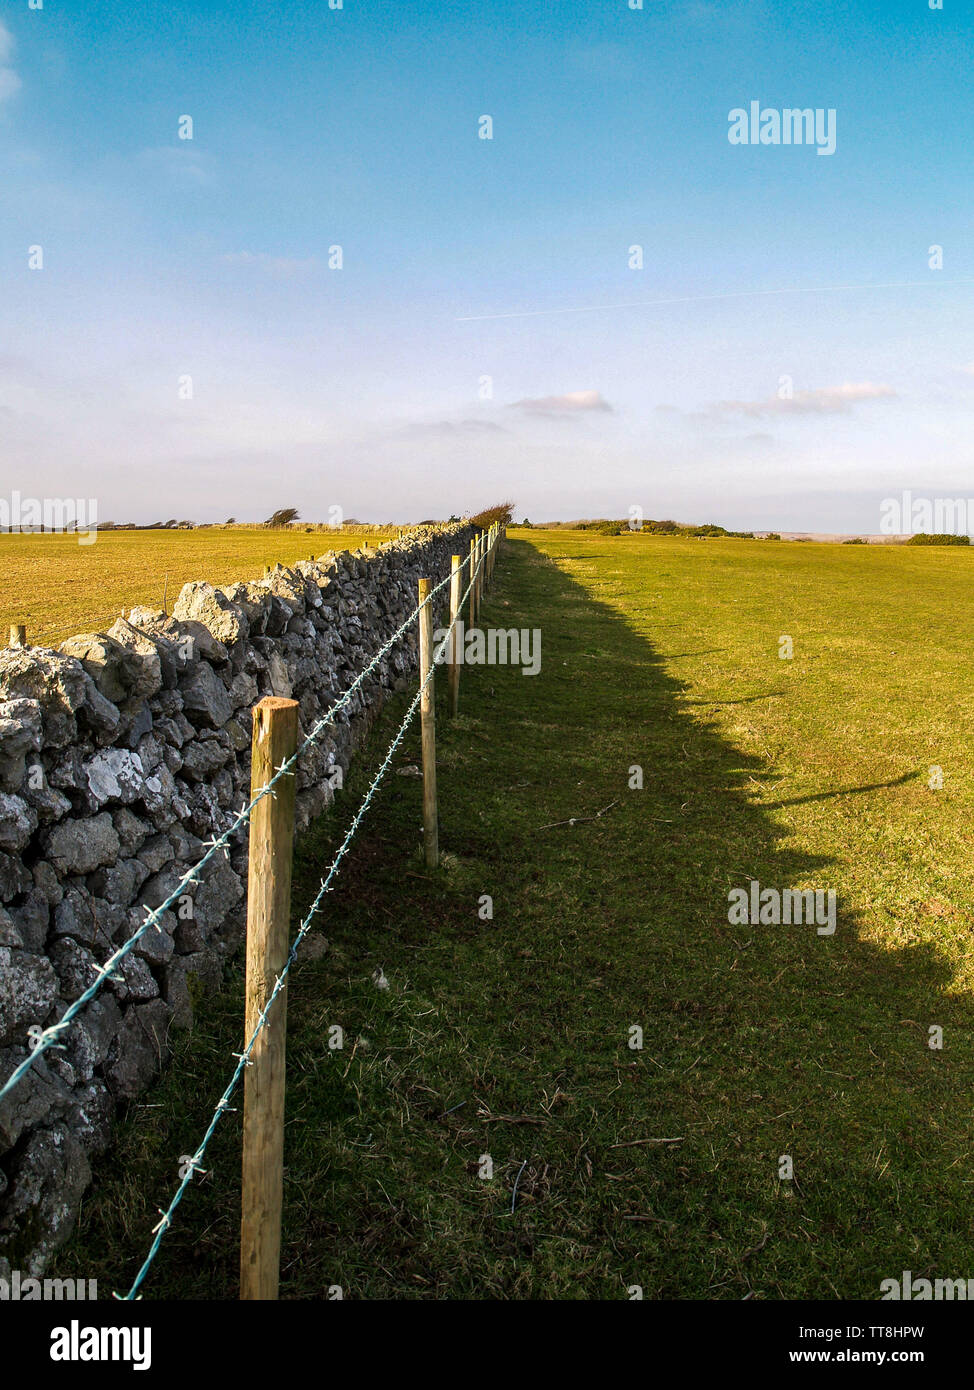 Barbelés et mur de pierre avec ombre sur terrain et de ciel bleu. Près de Oxwich Point, Oxwich Bay, Gower, Pays de Galles, Royaume-Uni. Banque D'Images